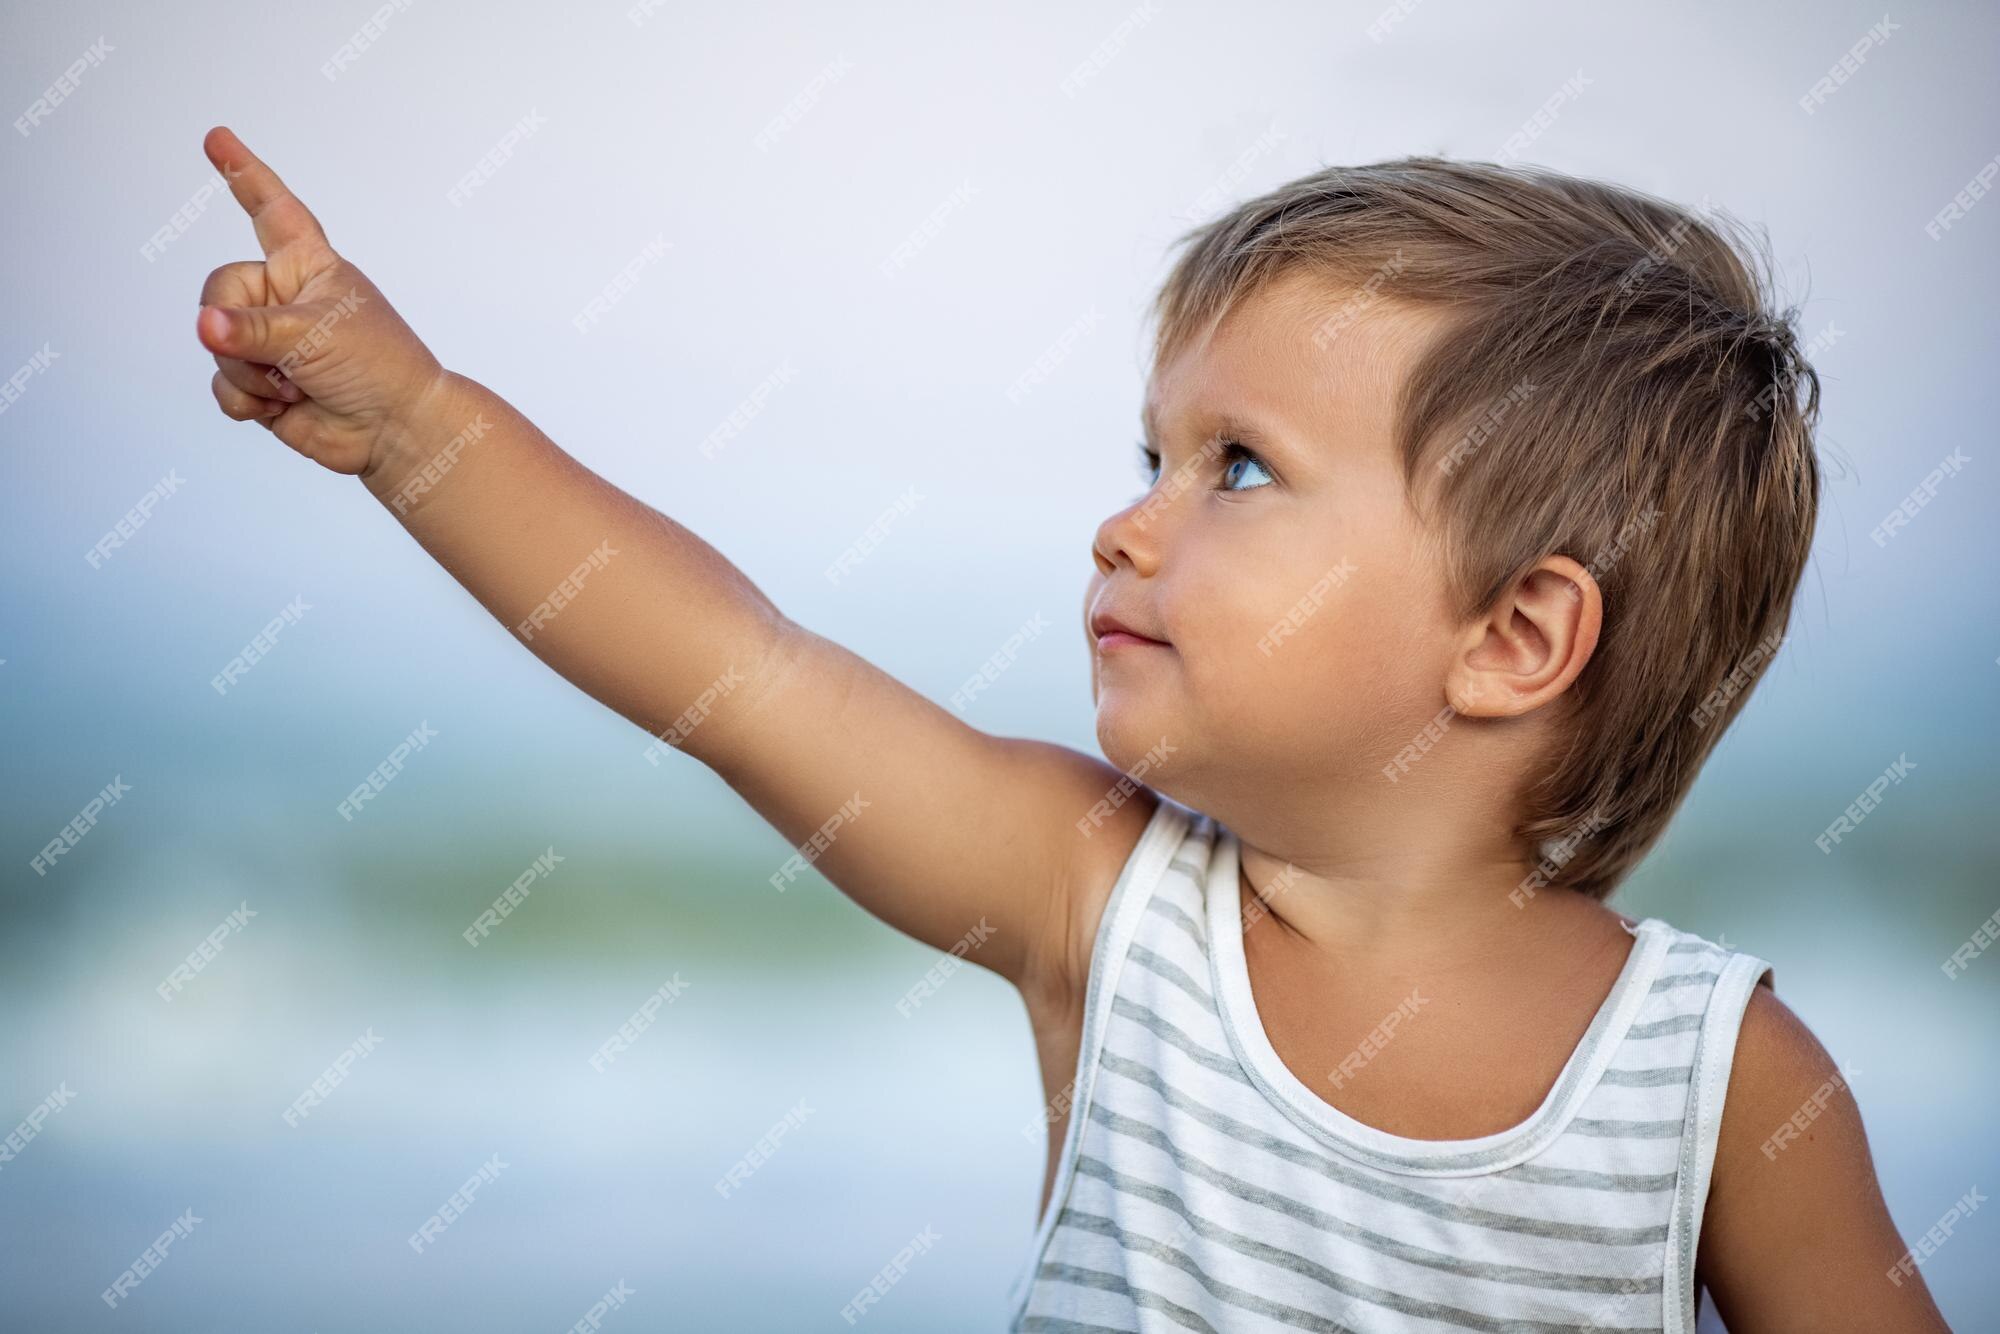 pequeño y adorable niño calvo bronceado con una camiseta de rayas blancas y negras con cabello dorado claro y grandes ojos azules se muestran a lo lejos en las